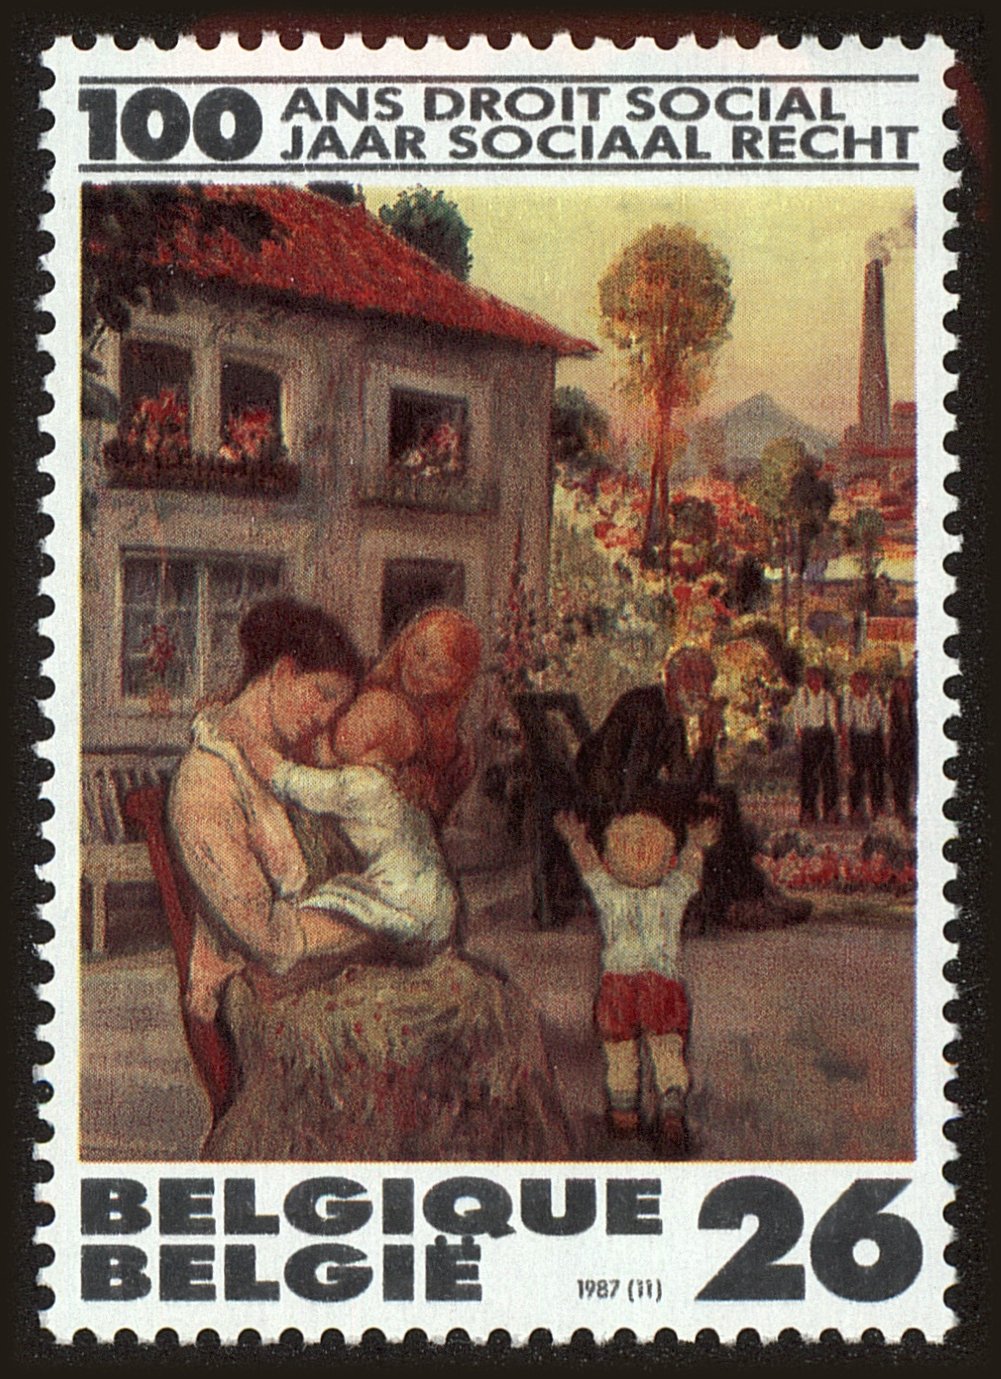 Front view of Belgium 1279 collectors stamp